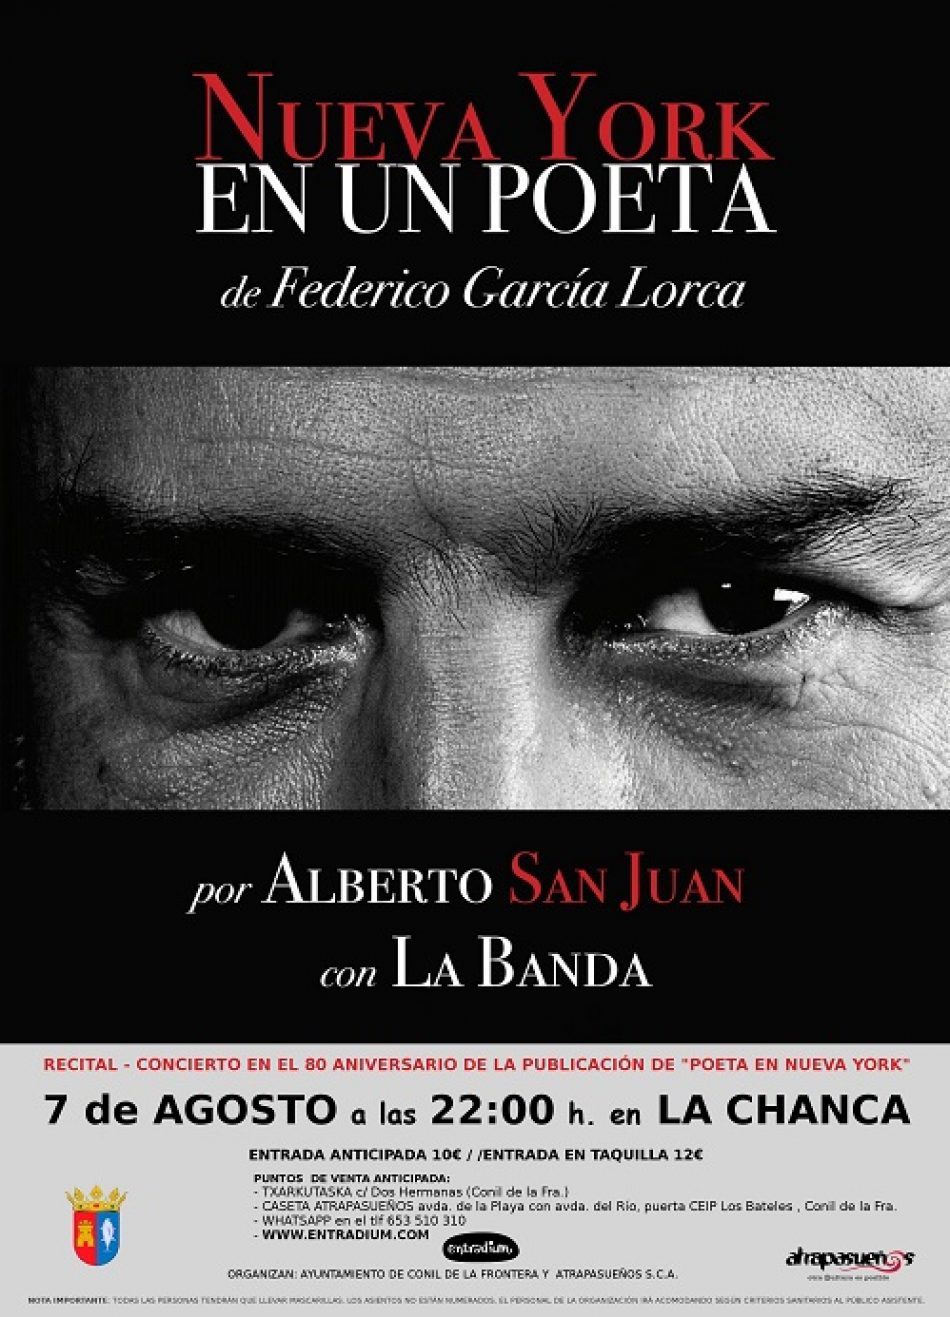 El actor Alberto San Juan ofrecerá su recital «Nueva York en un poeta» en Conil el próximo 7 de agosto